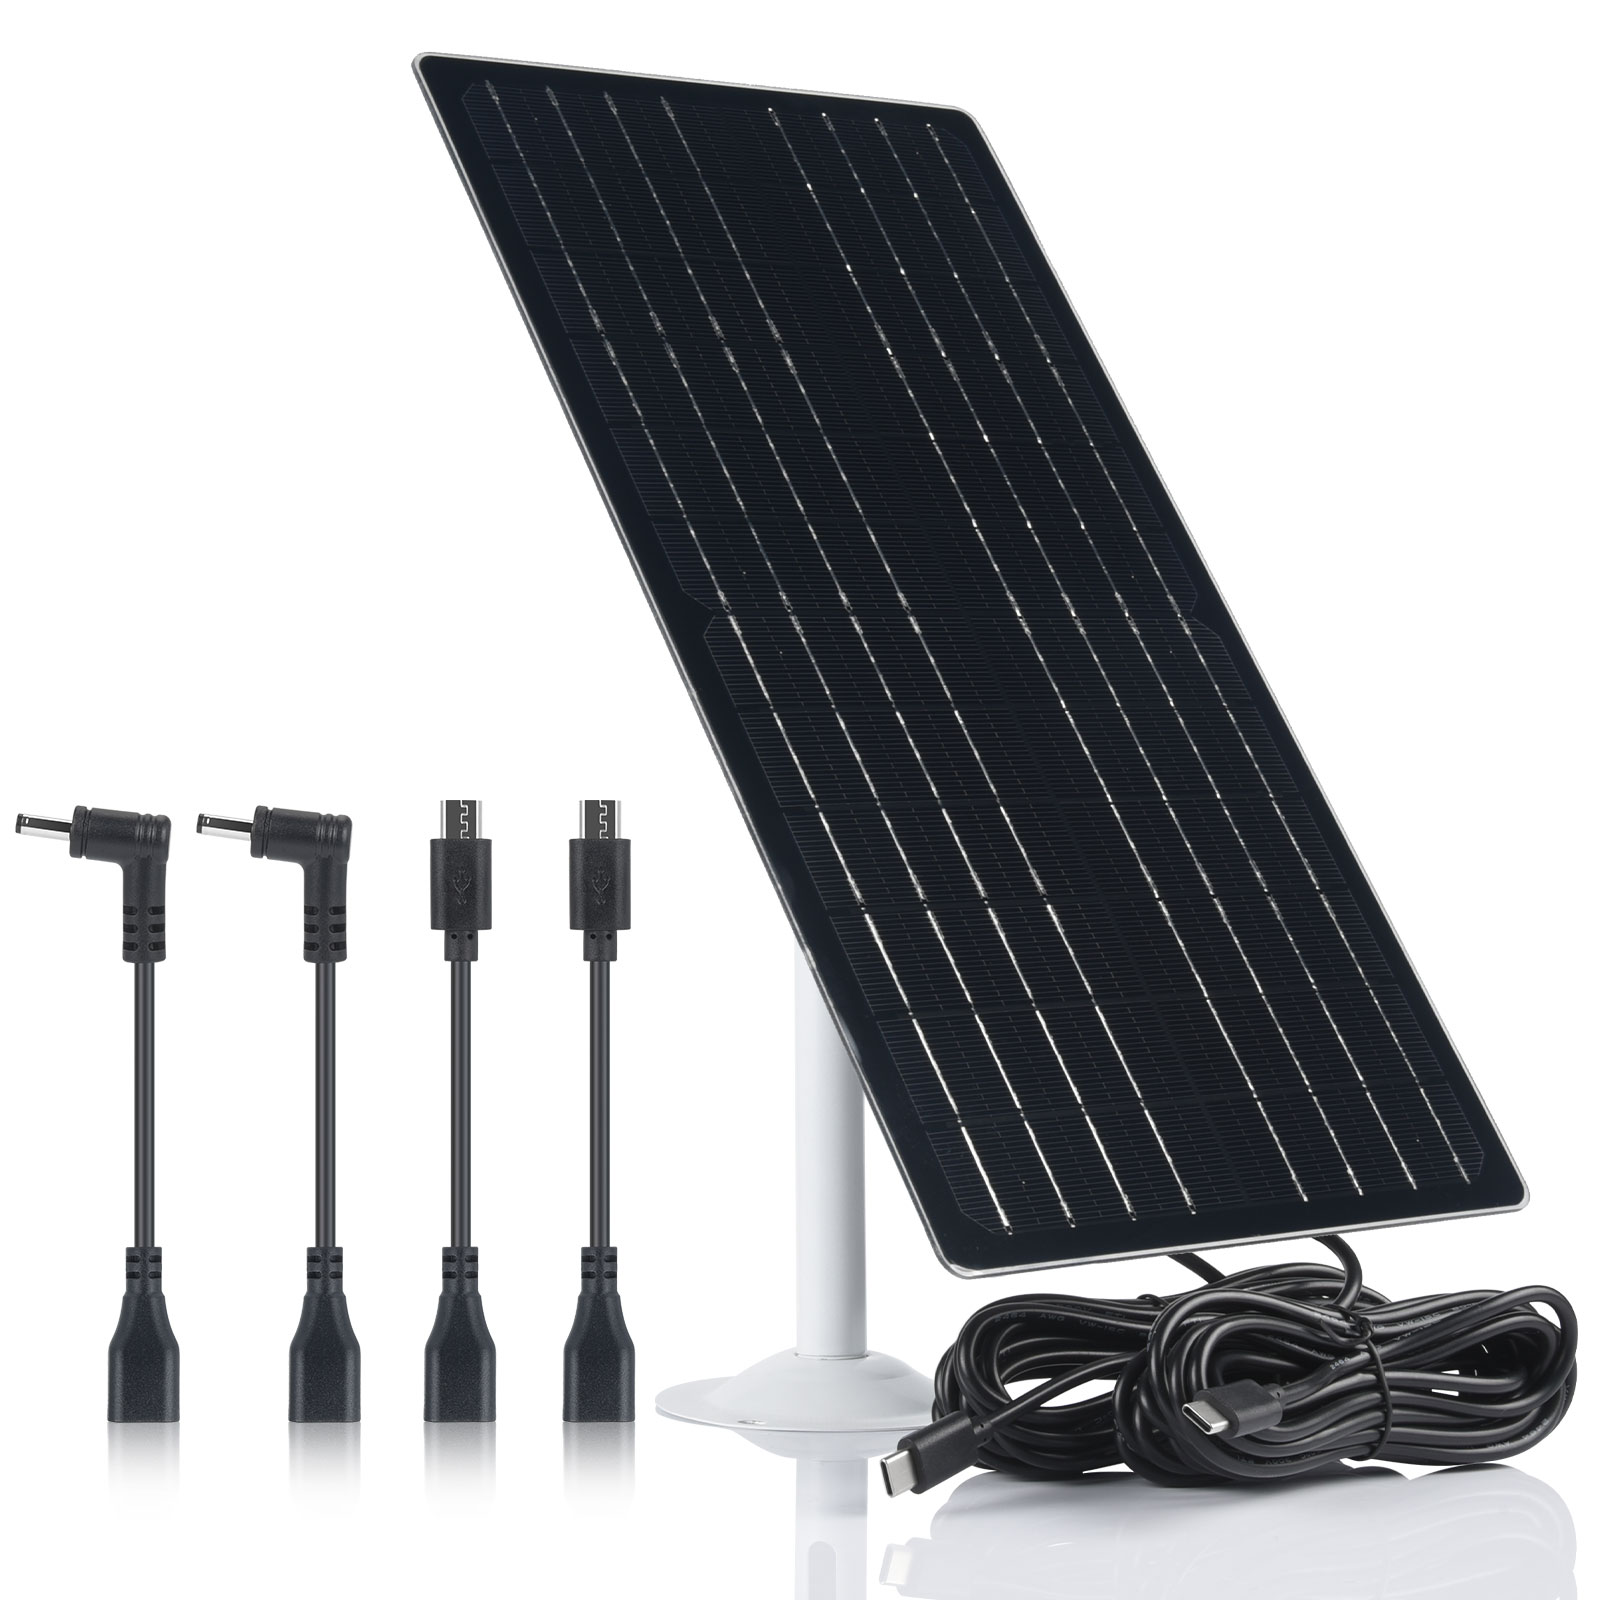 12W Mini Monocrystalline Solar Panel with USB 5V Port |12W 